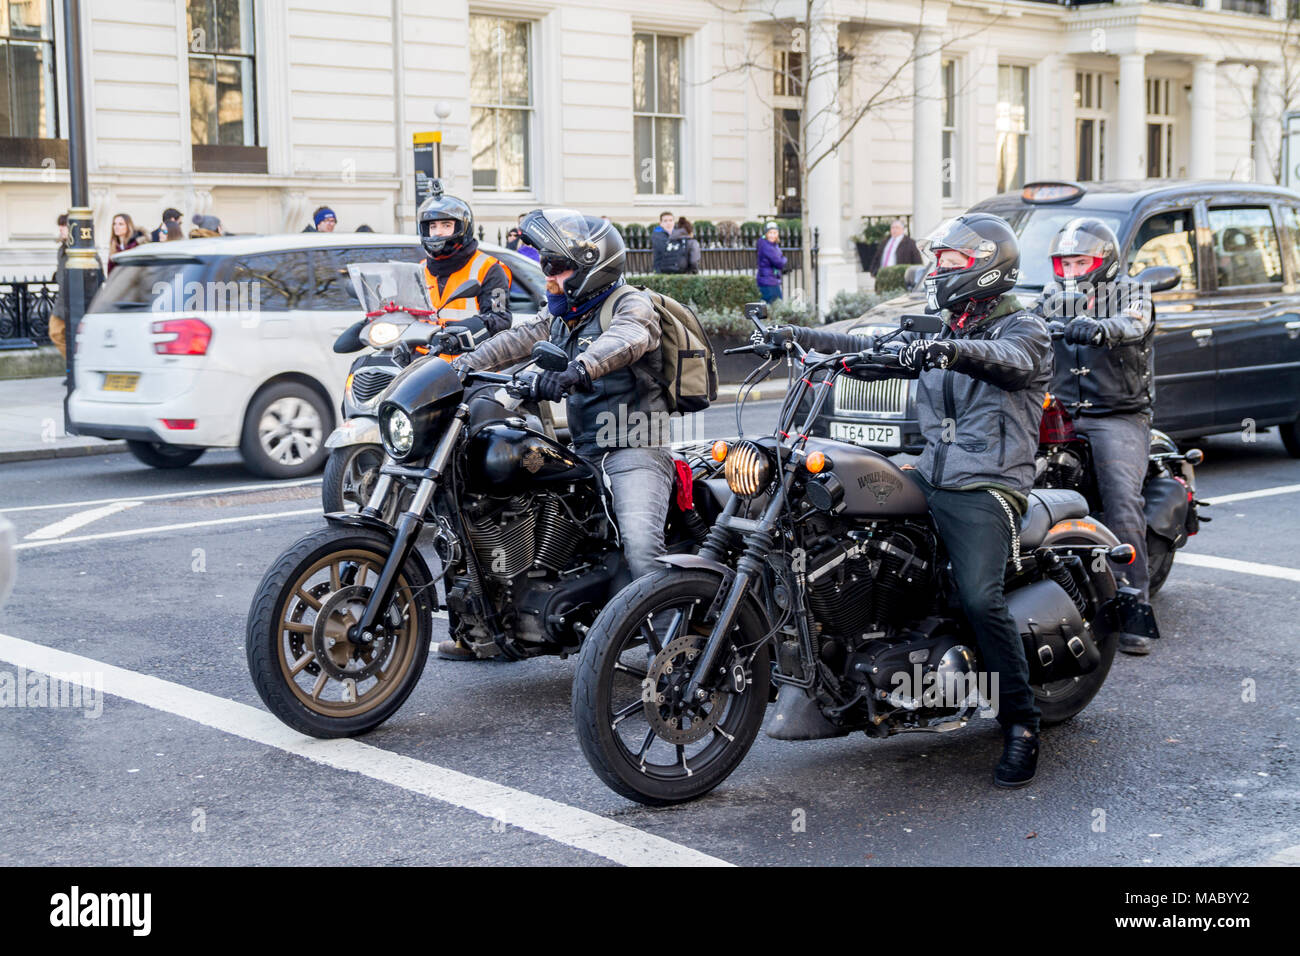 Groupe de motards équitation Harley Davidson Bikes,motos, motos, vélo, piste lads lads sur motherbikes London UK Banque D'Images